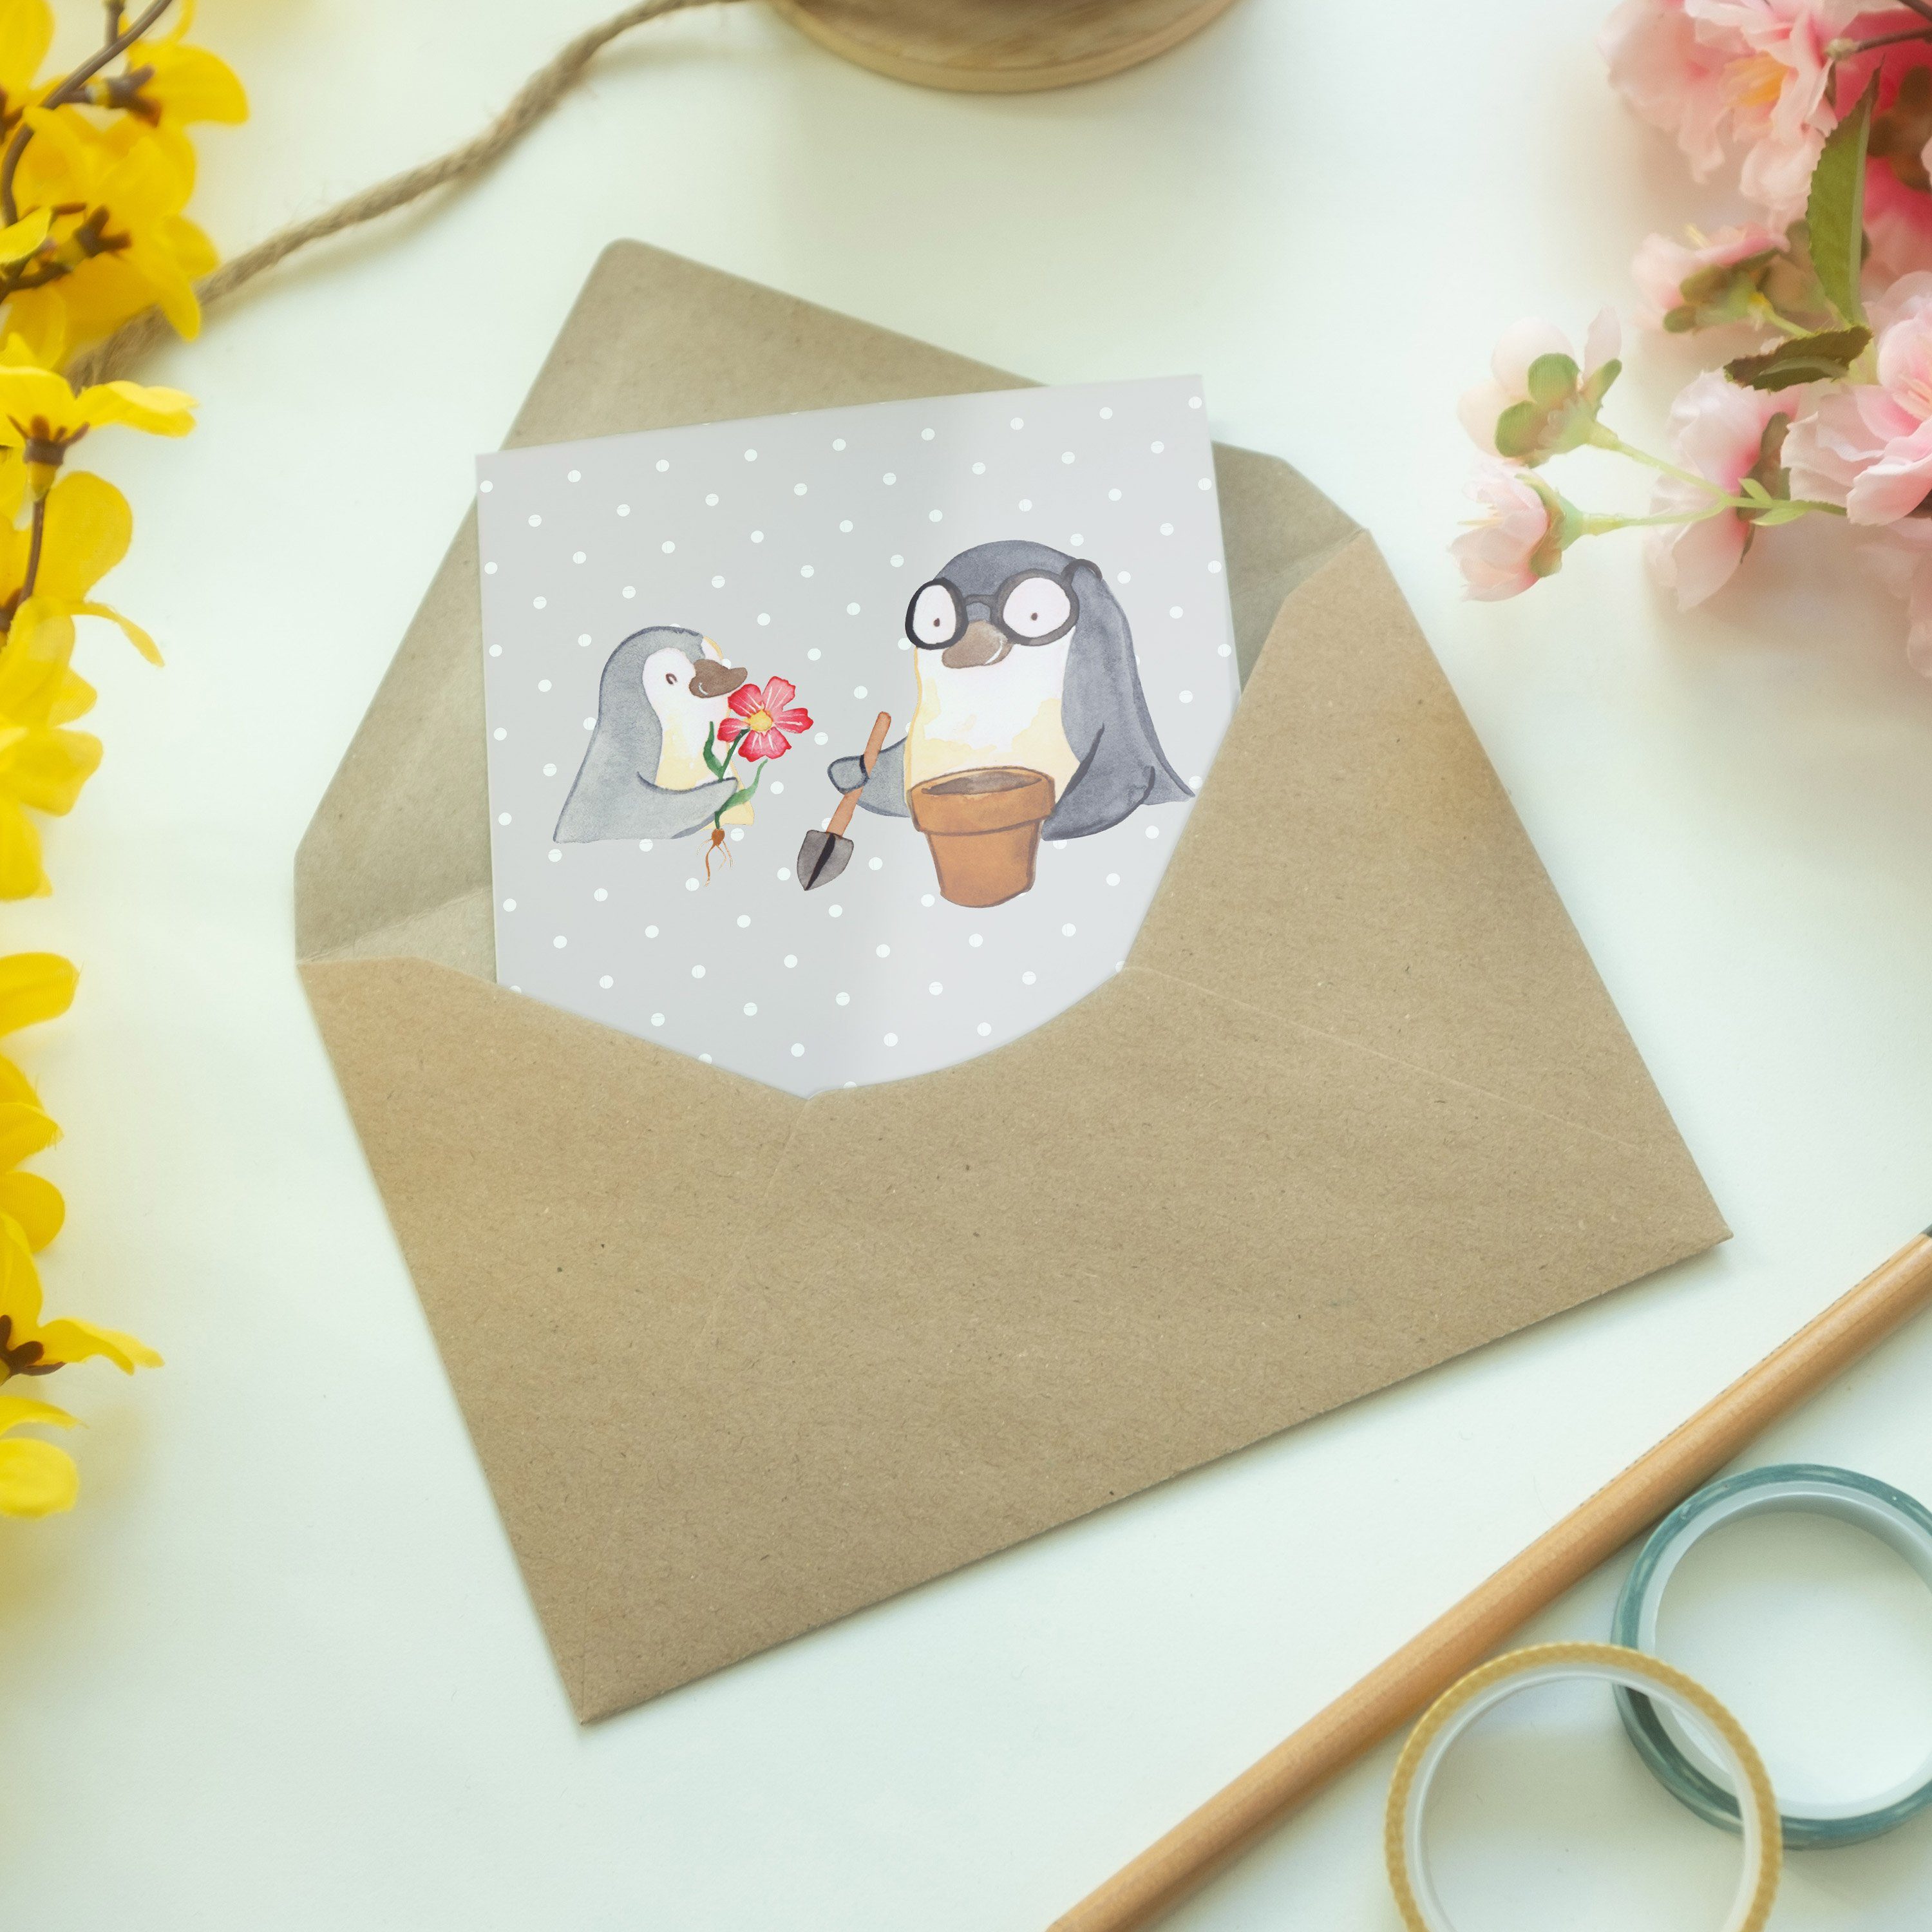 Mr. & Mrs. Panda Grau - Welt Bester Opi Geschenk, der Oppi, Pastell Grußkarte Hochzeit - Pinguin